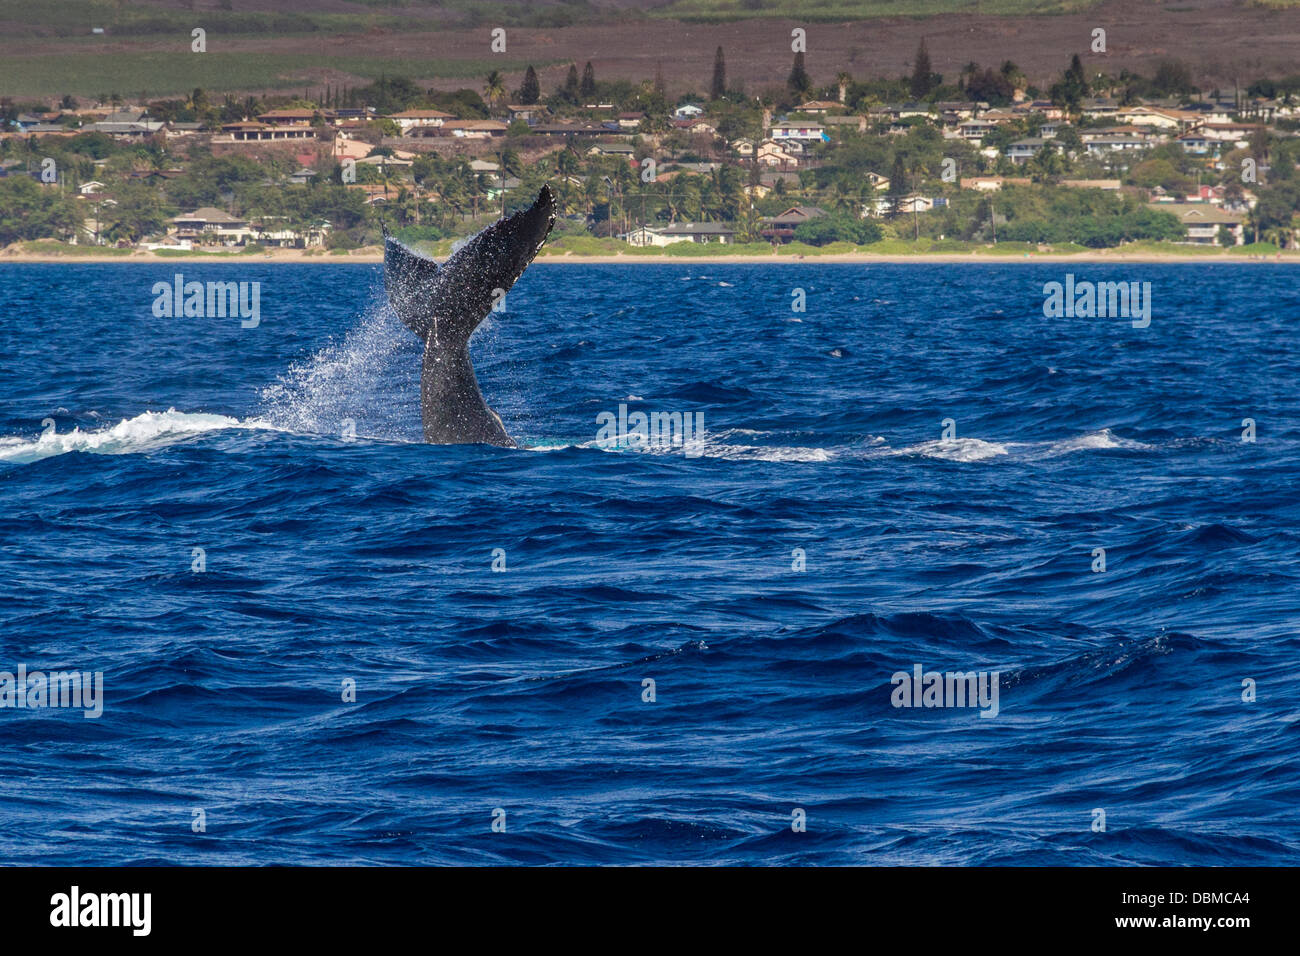 Humpback Whale, Megaptera novaeangliae, off the Western Coast of the island of Maui in Hawaii. Stock Photo